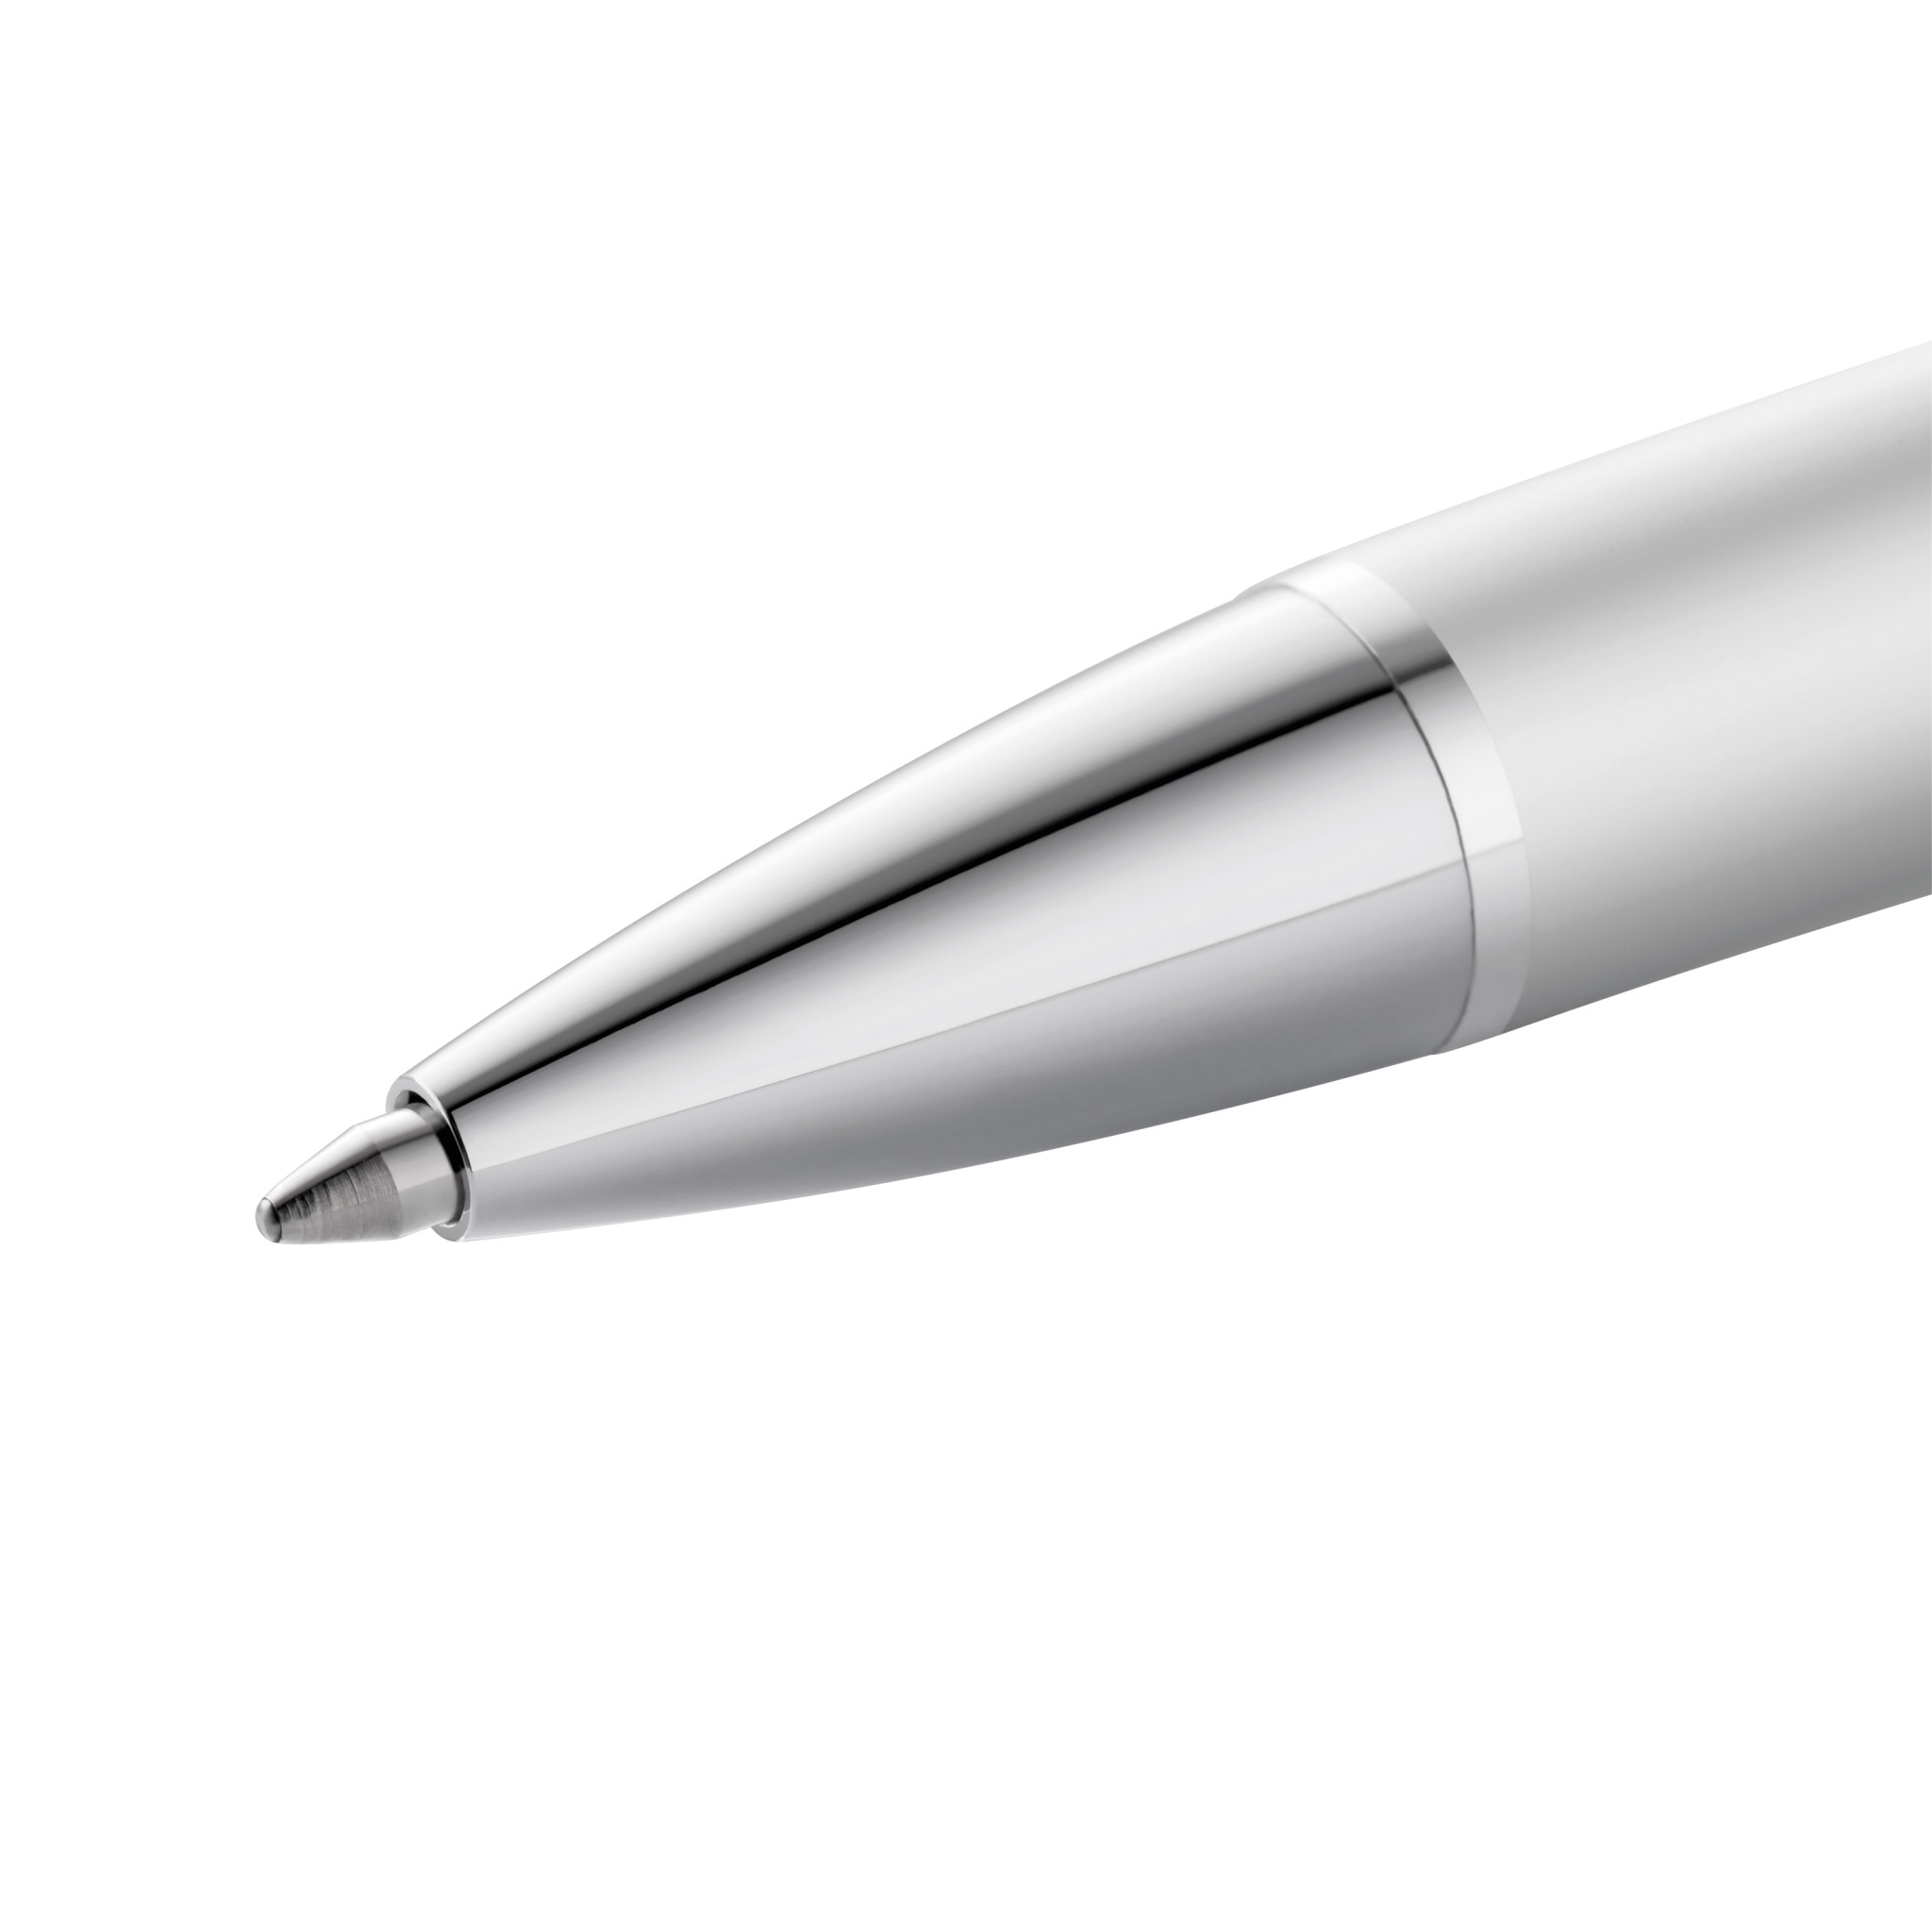 Pelikan Ballpoint Pen Pura® K40 Petrol